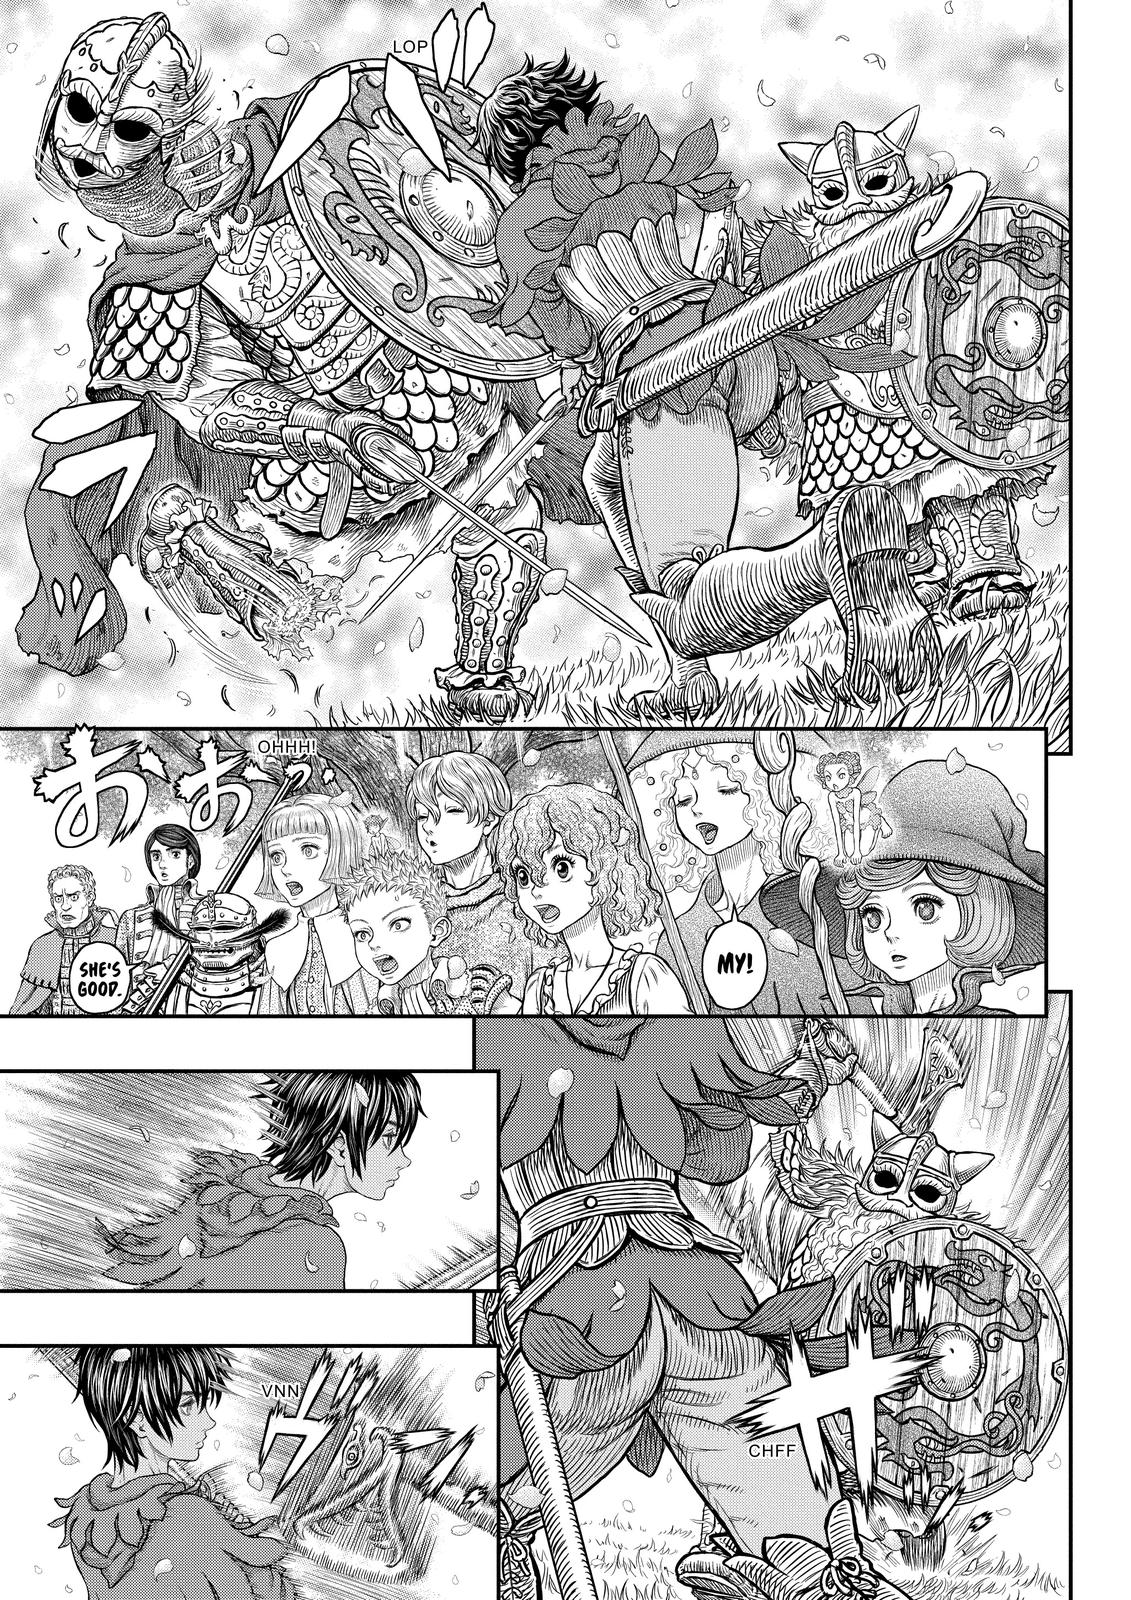 Berserk Manga Chapter 359 image 09